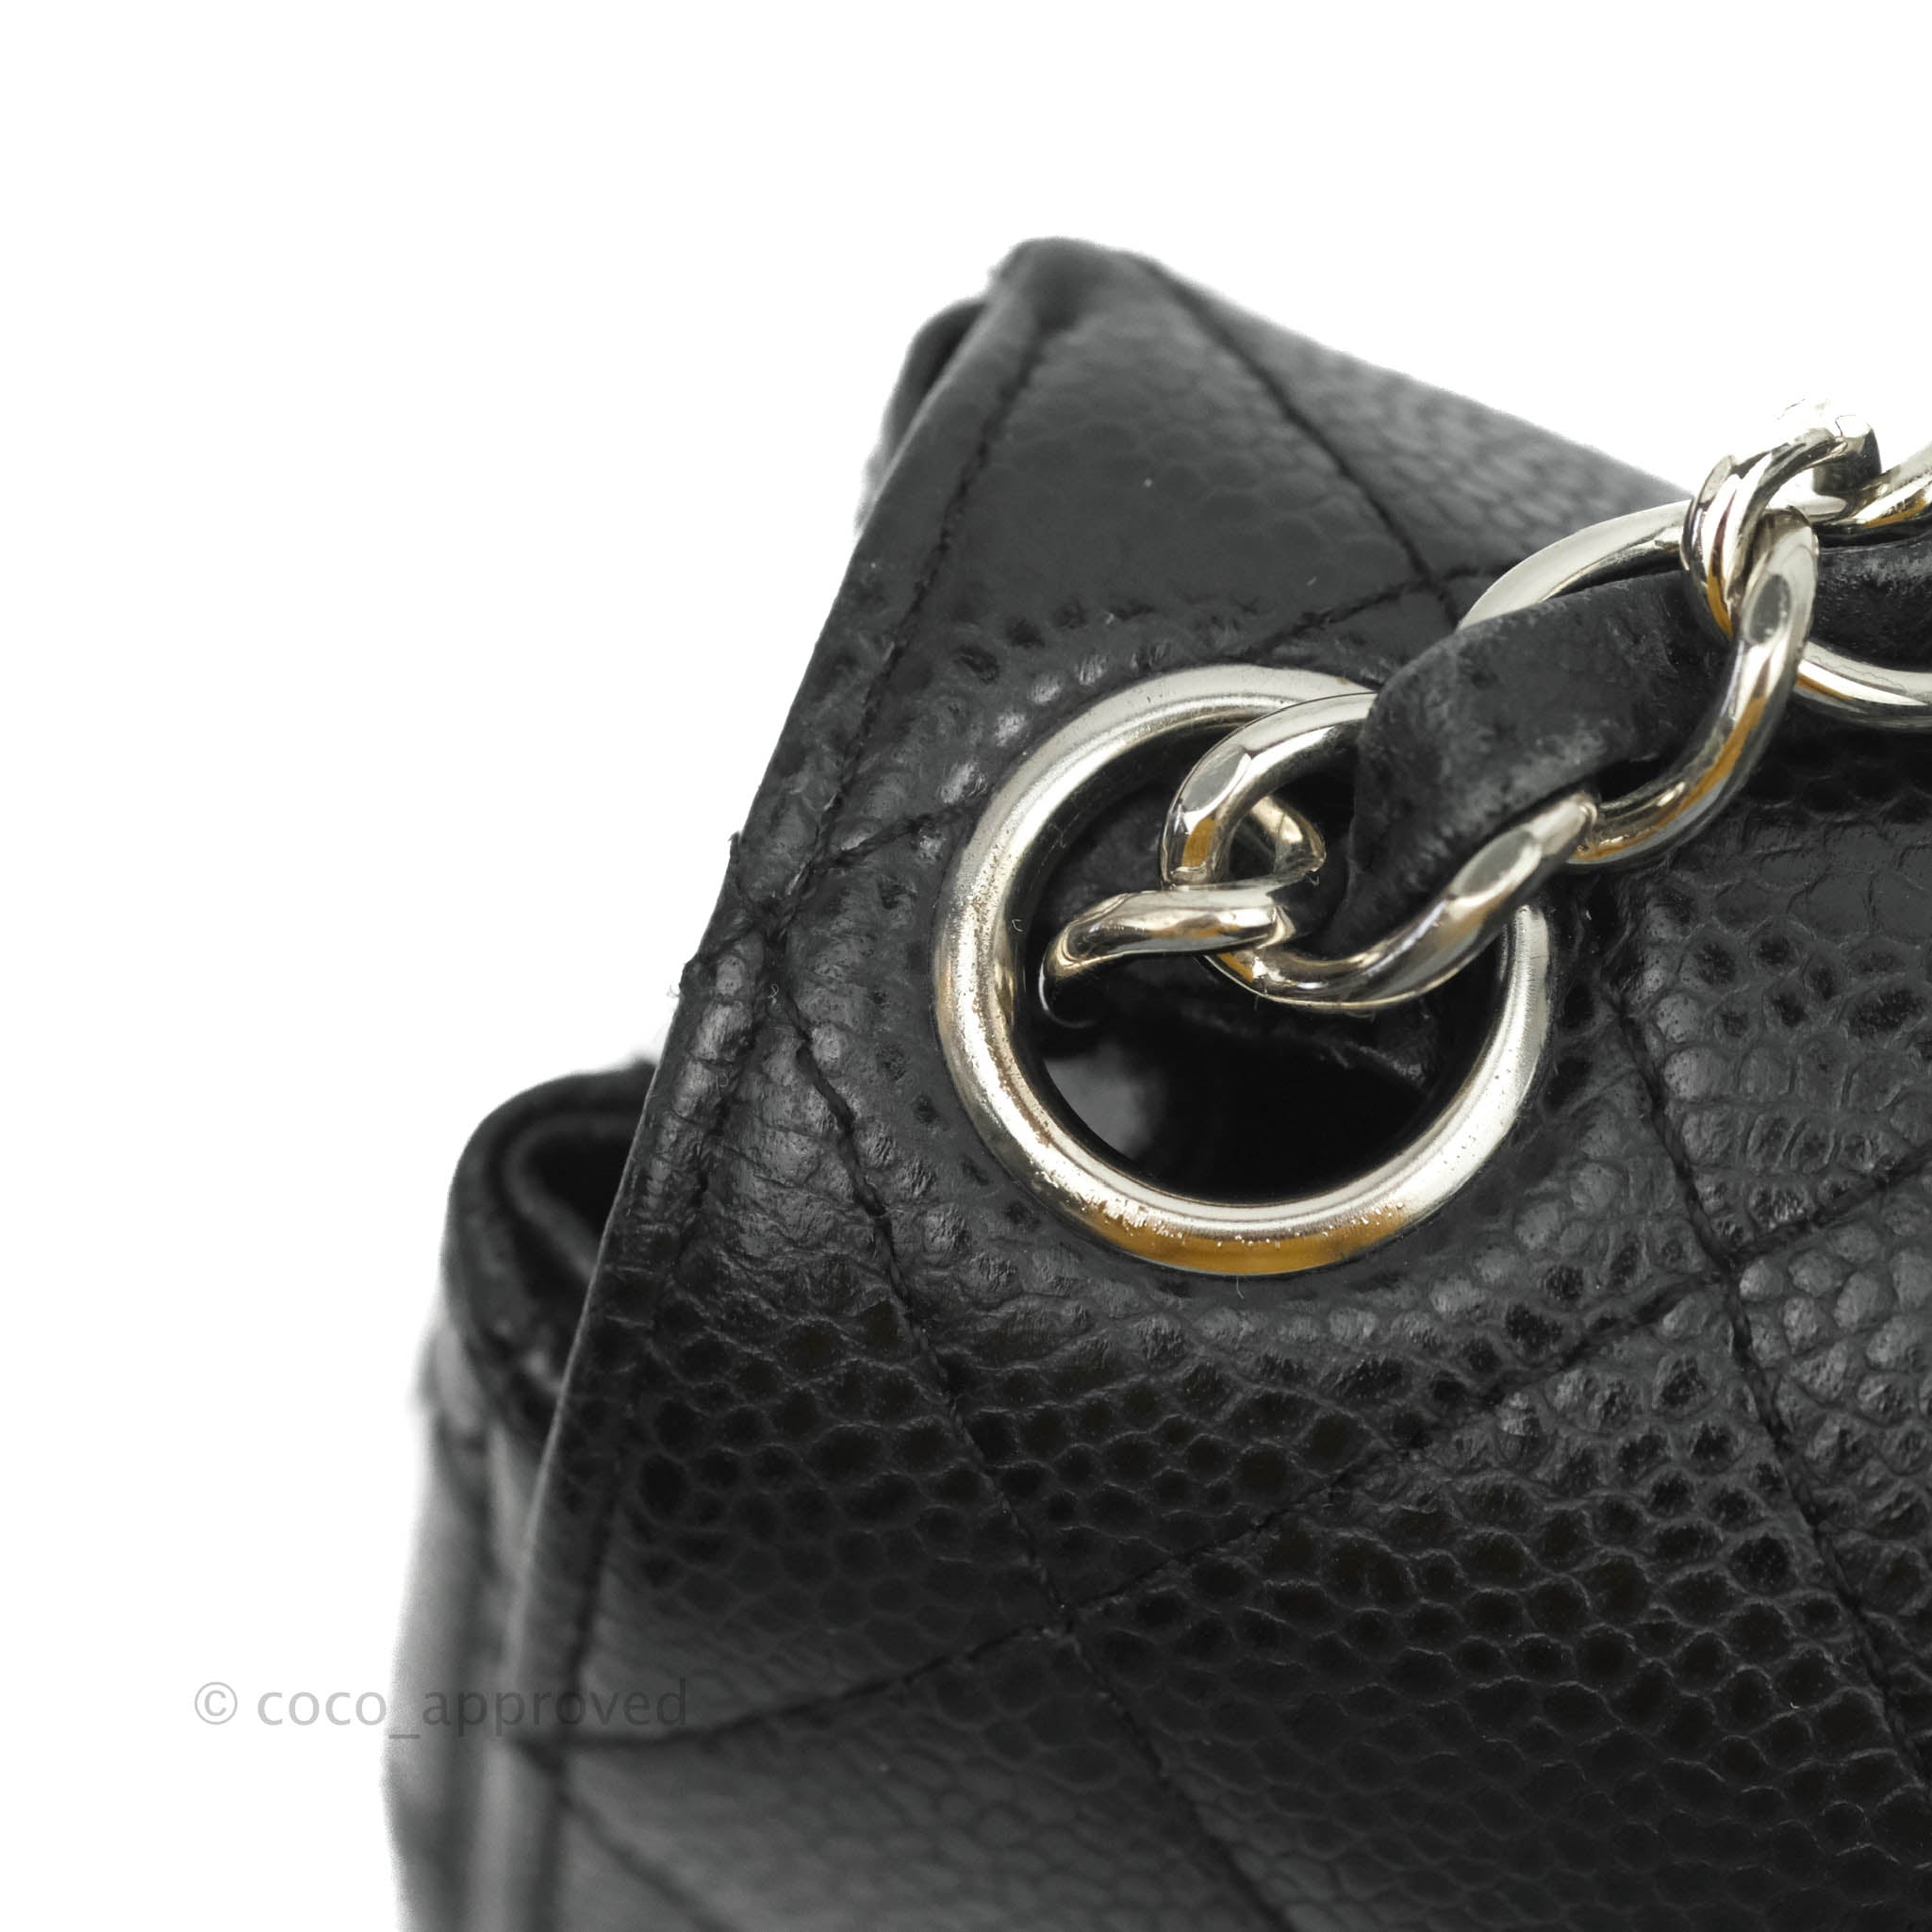 Chanel Mini Square Quilted Black Caviar Silver Hardware – Coco